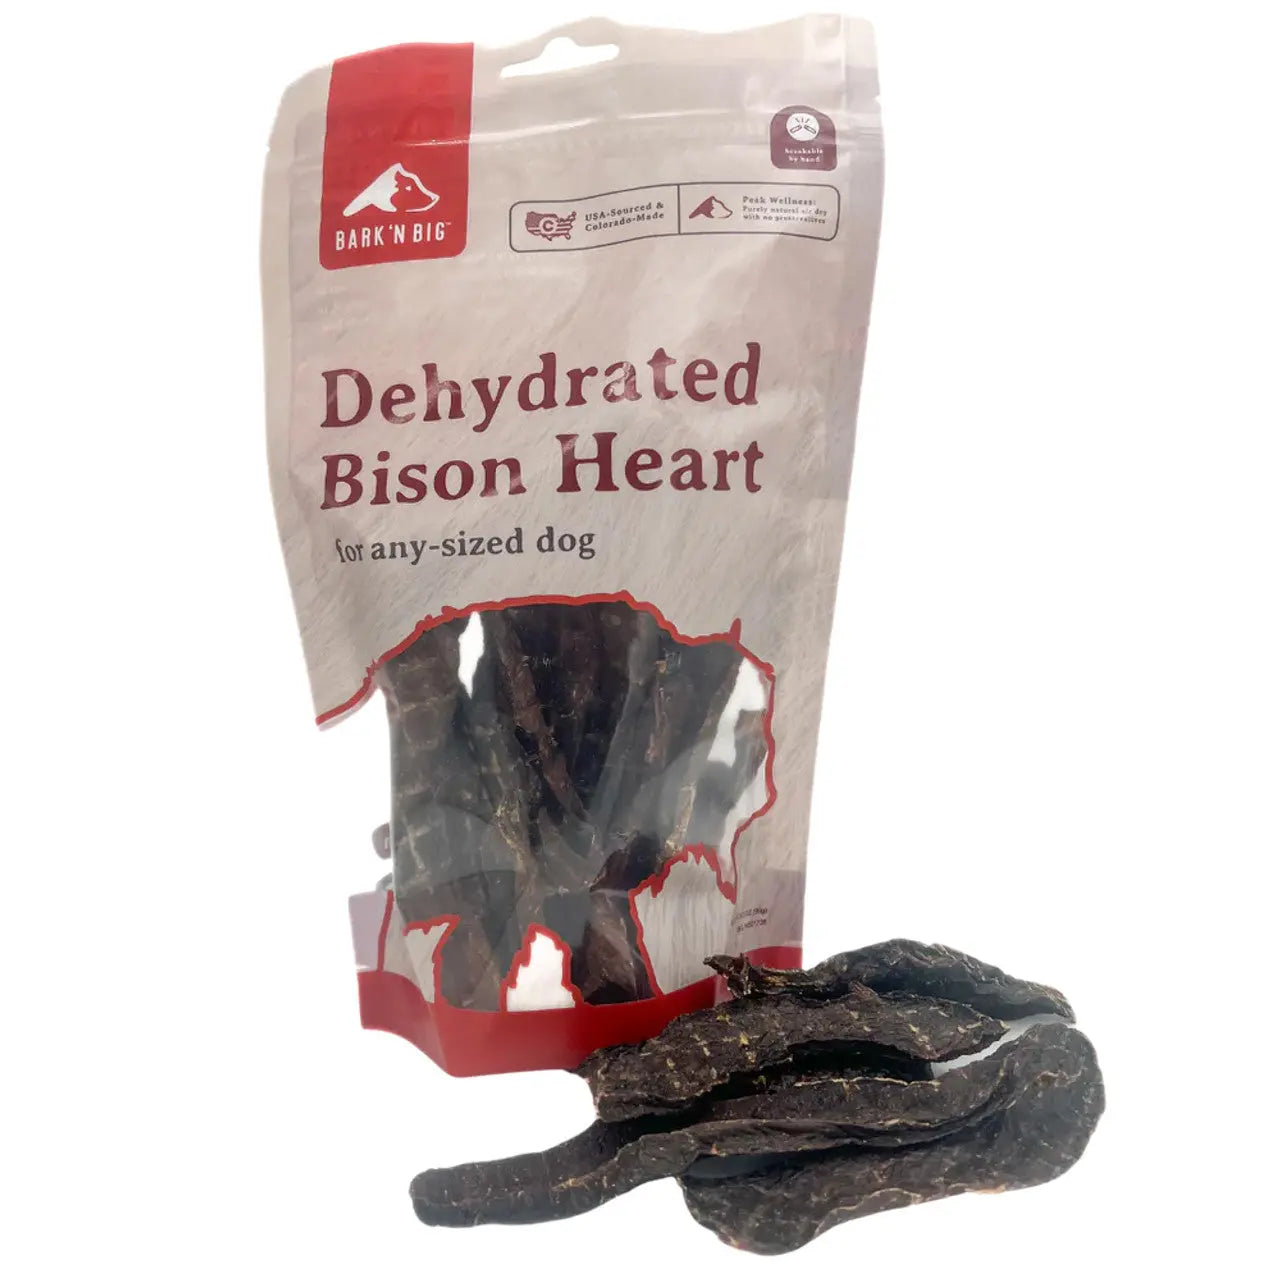 BarkNBig Dehydrated Bison Heart Dog Treats 3.5oz BarknBig